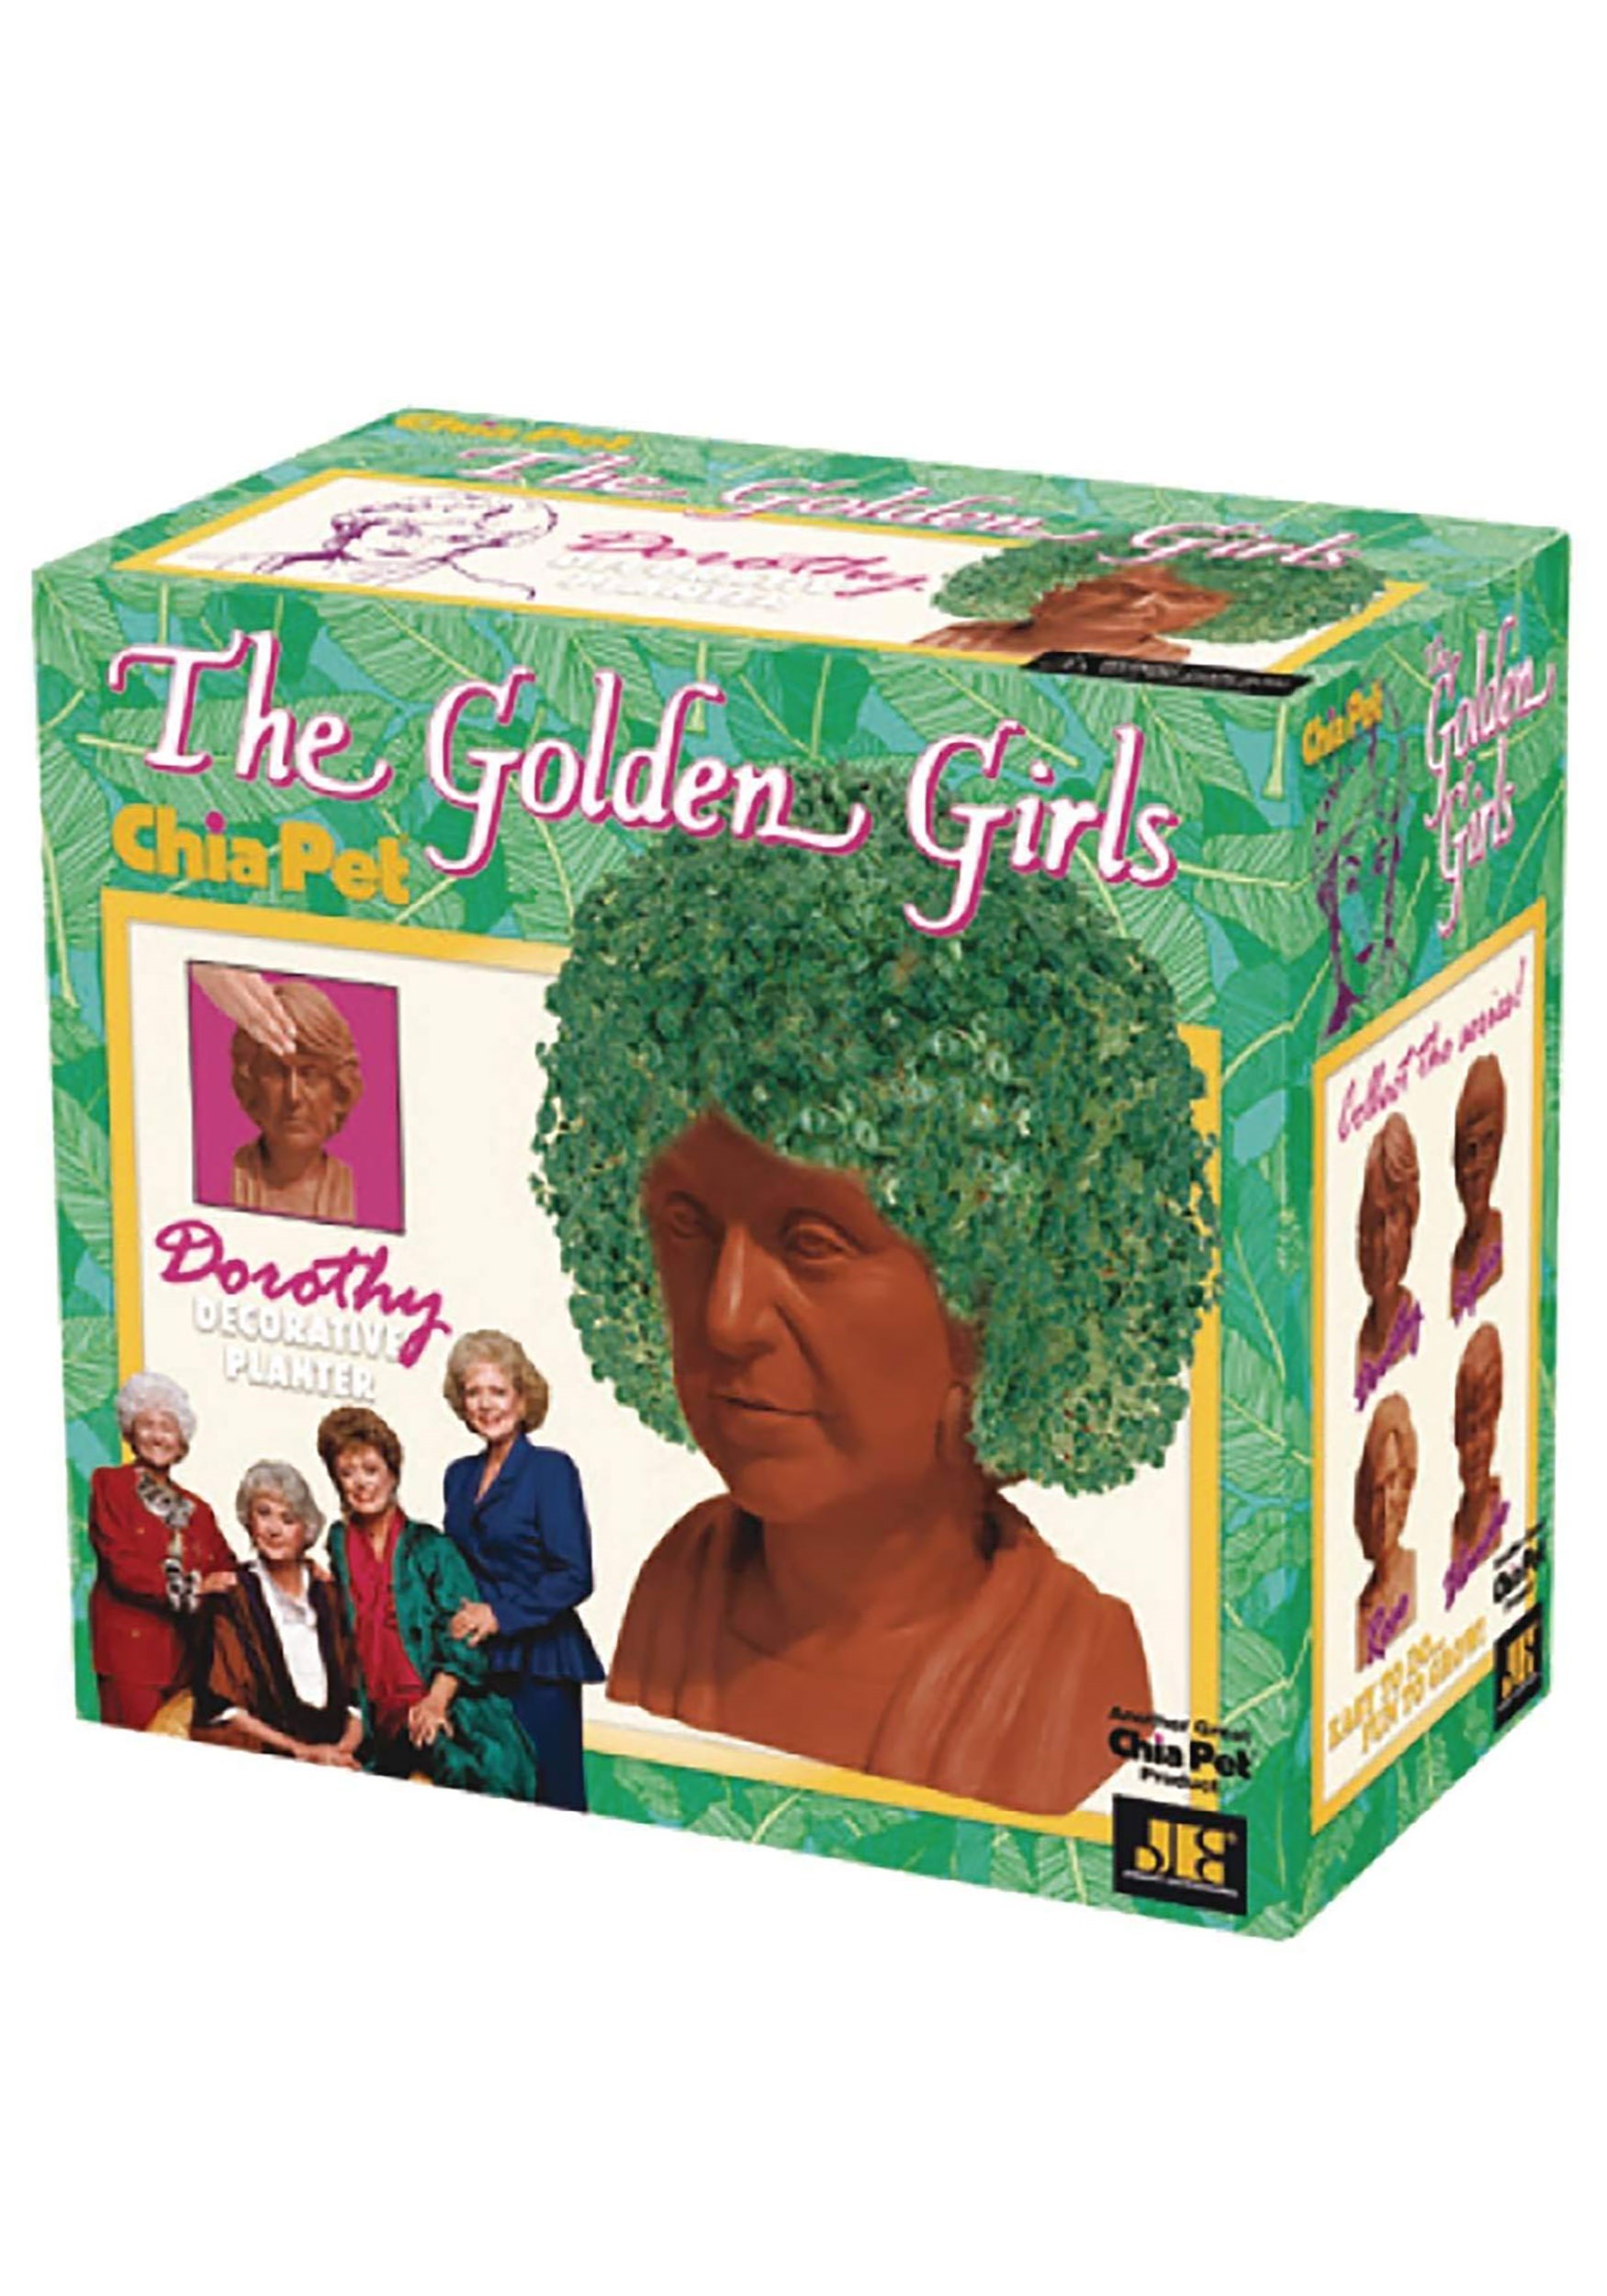 The Golden Girls Chia Pet- Dorothy